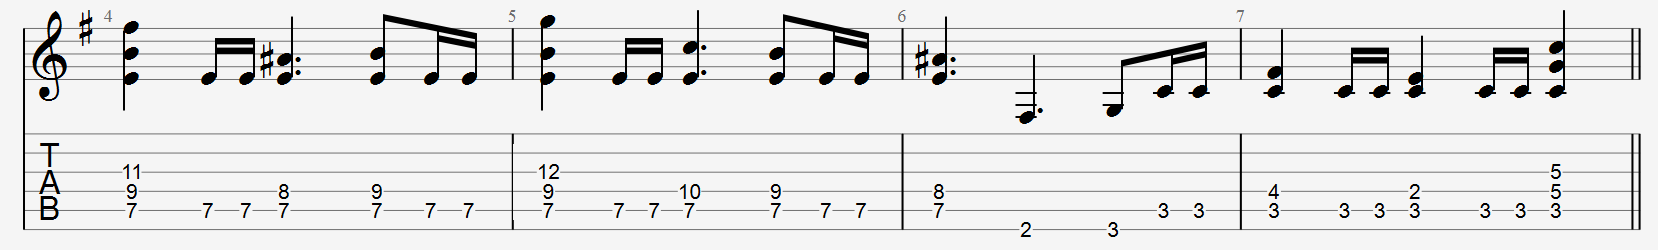 rhythm a section guitar tab